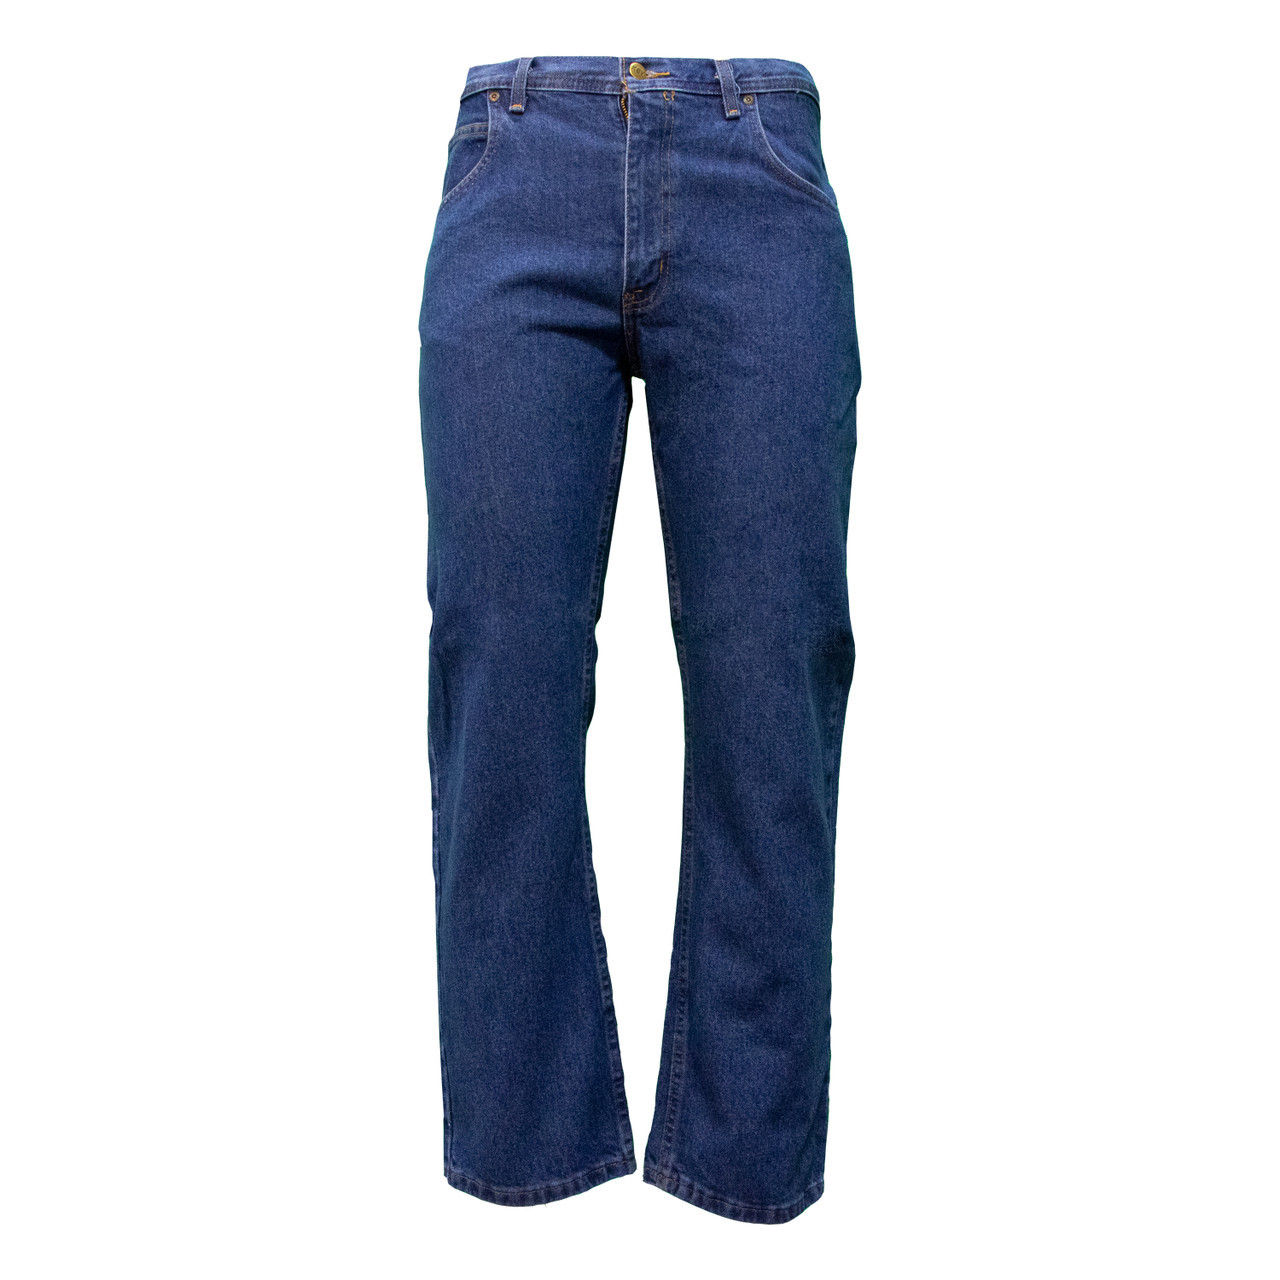 Lands' End Men's Recover 5 Pocket Traditional Fit Comfort Waist Denim Jeans  - 30x30 - Undyed Natural : Target